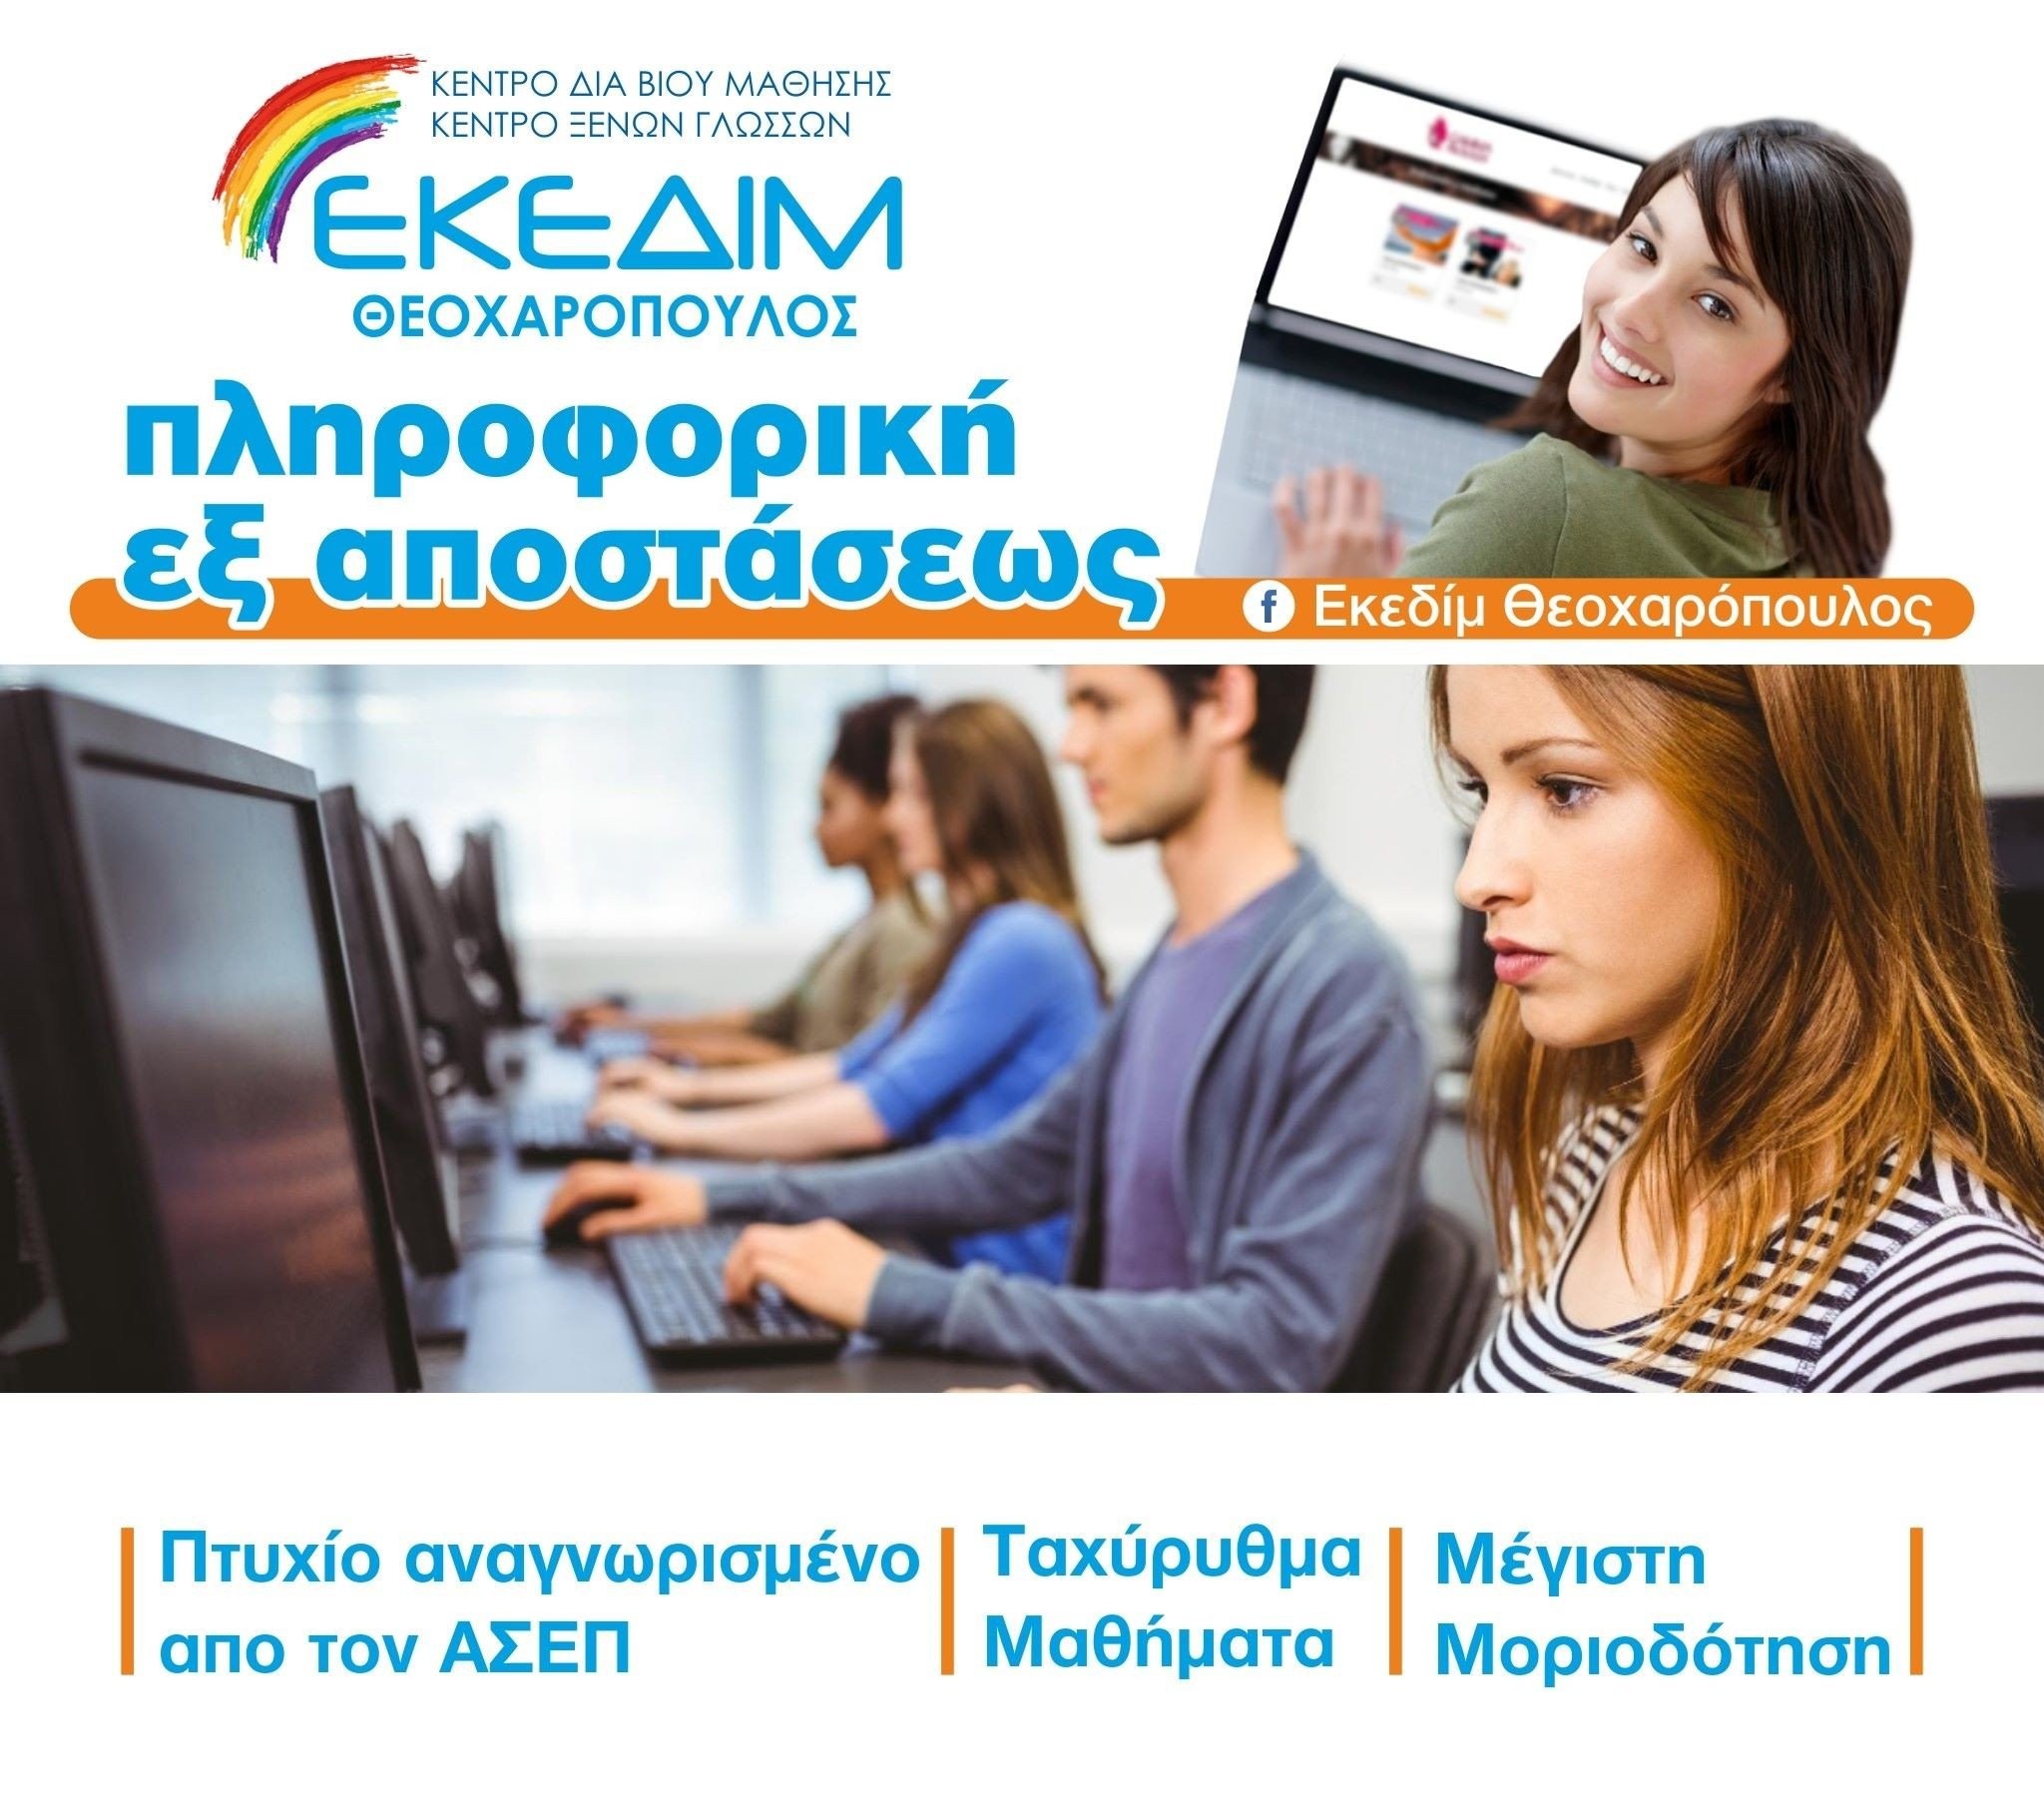 ΚΕΔΙΜ Θεοχαρόπουλος- Ταχύρυθμα μαθήματα πληροφορικής για απόκτηση πτυχίου αναγνωρισμένο από τον ΑΣΕΠ, μέσω του φορέα πιστοποίησης I-SKILLS